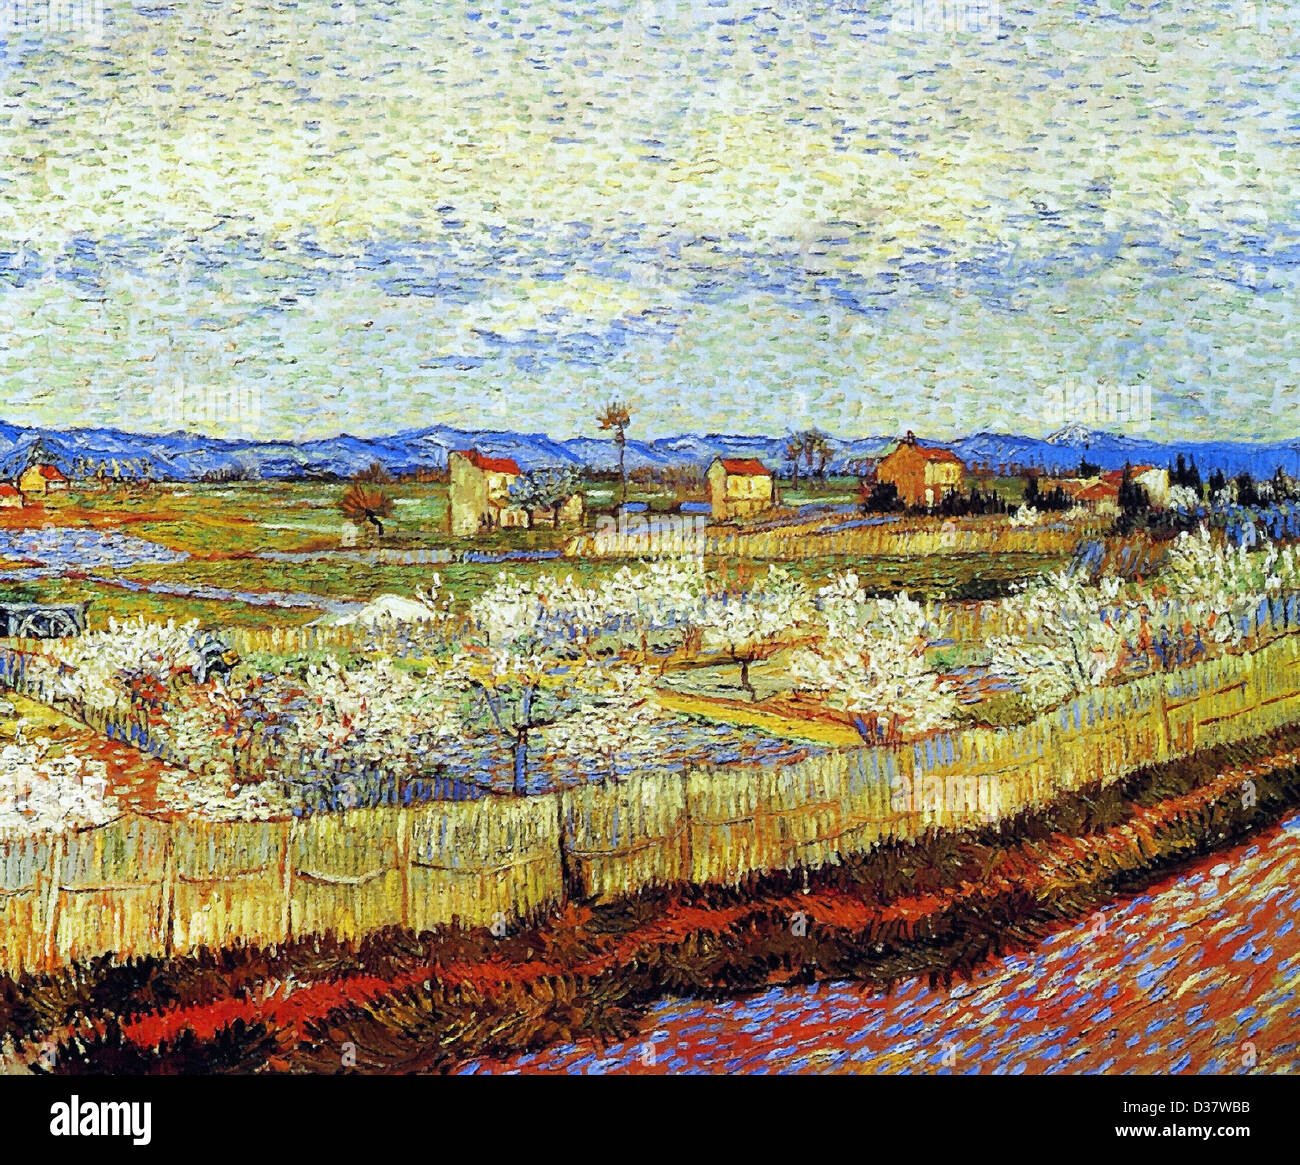 Vincent van Gogh, pêchers en fleurs. 1889. Le postimpressionnisme. Huile sur toile. Courtauld Institute of Art, Londres, Royaume-Uni. Banque D'Images